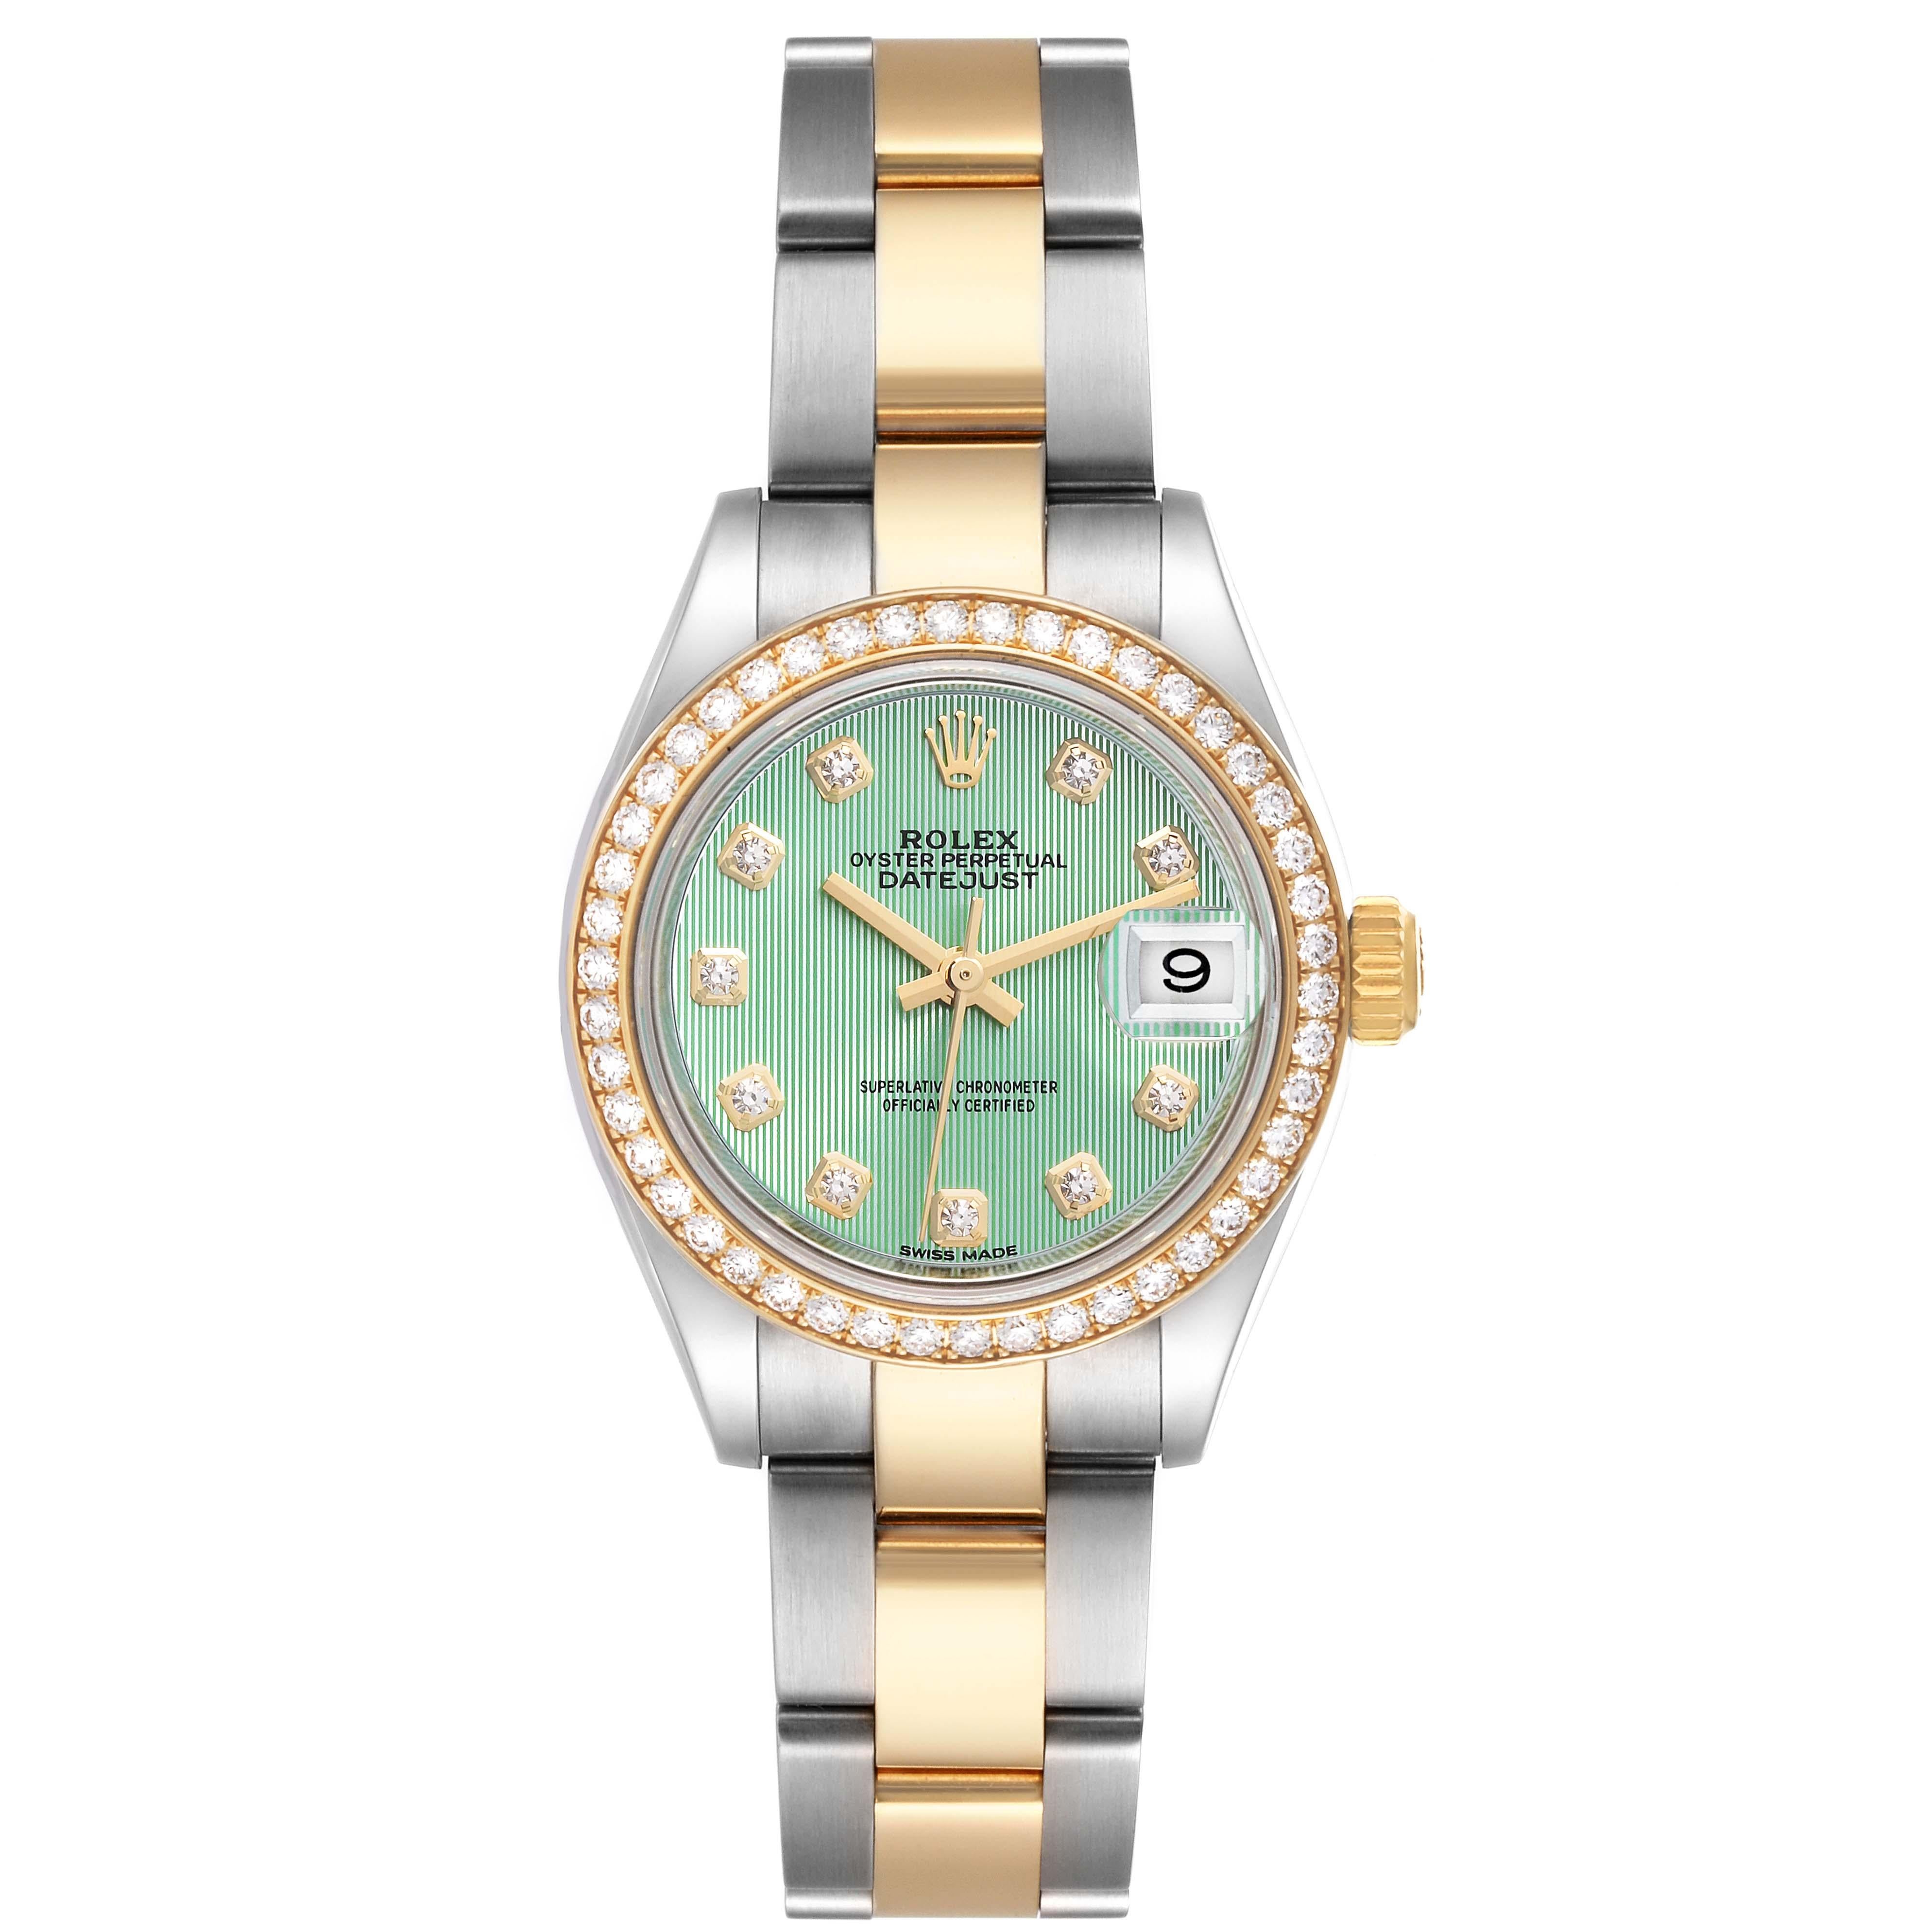 Rolex Datejust 28 Green Stripe Steel Yellow Gold Diamond Ladies Watch 279383. Mouvement automatique à remontage automatique, officiellement certifié chronomètre. Boîtier oyster en acier inoxydable de 28.0 mm de diamètre. Logo Rolex sur une couronne